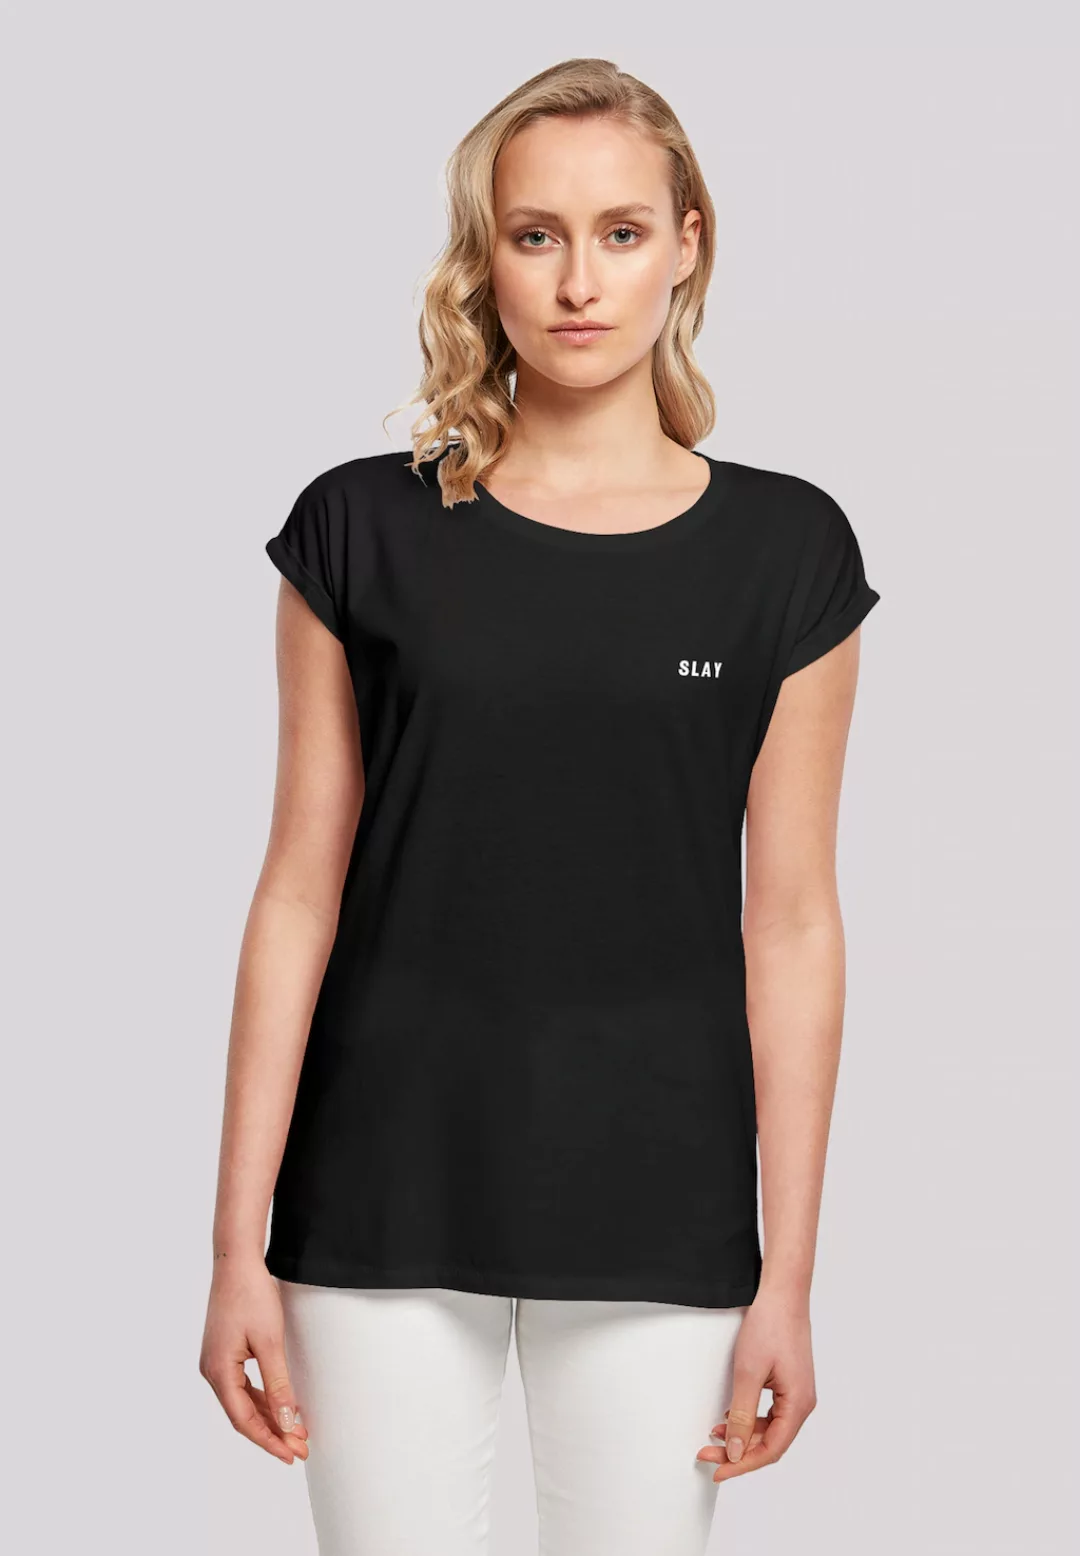 F4NT4STIC T-Shirt "Slay", Jugendwort 2022, slang günstig online kaufen